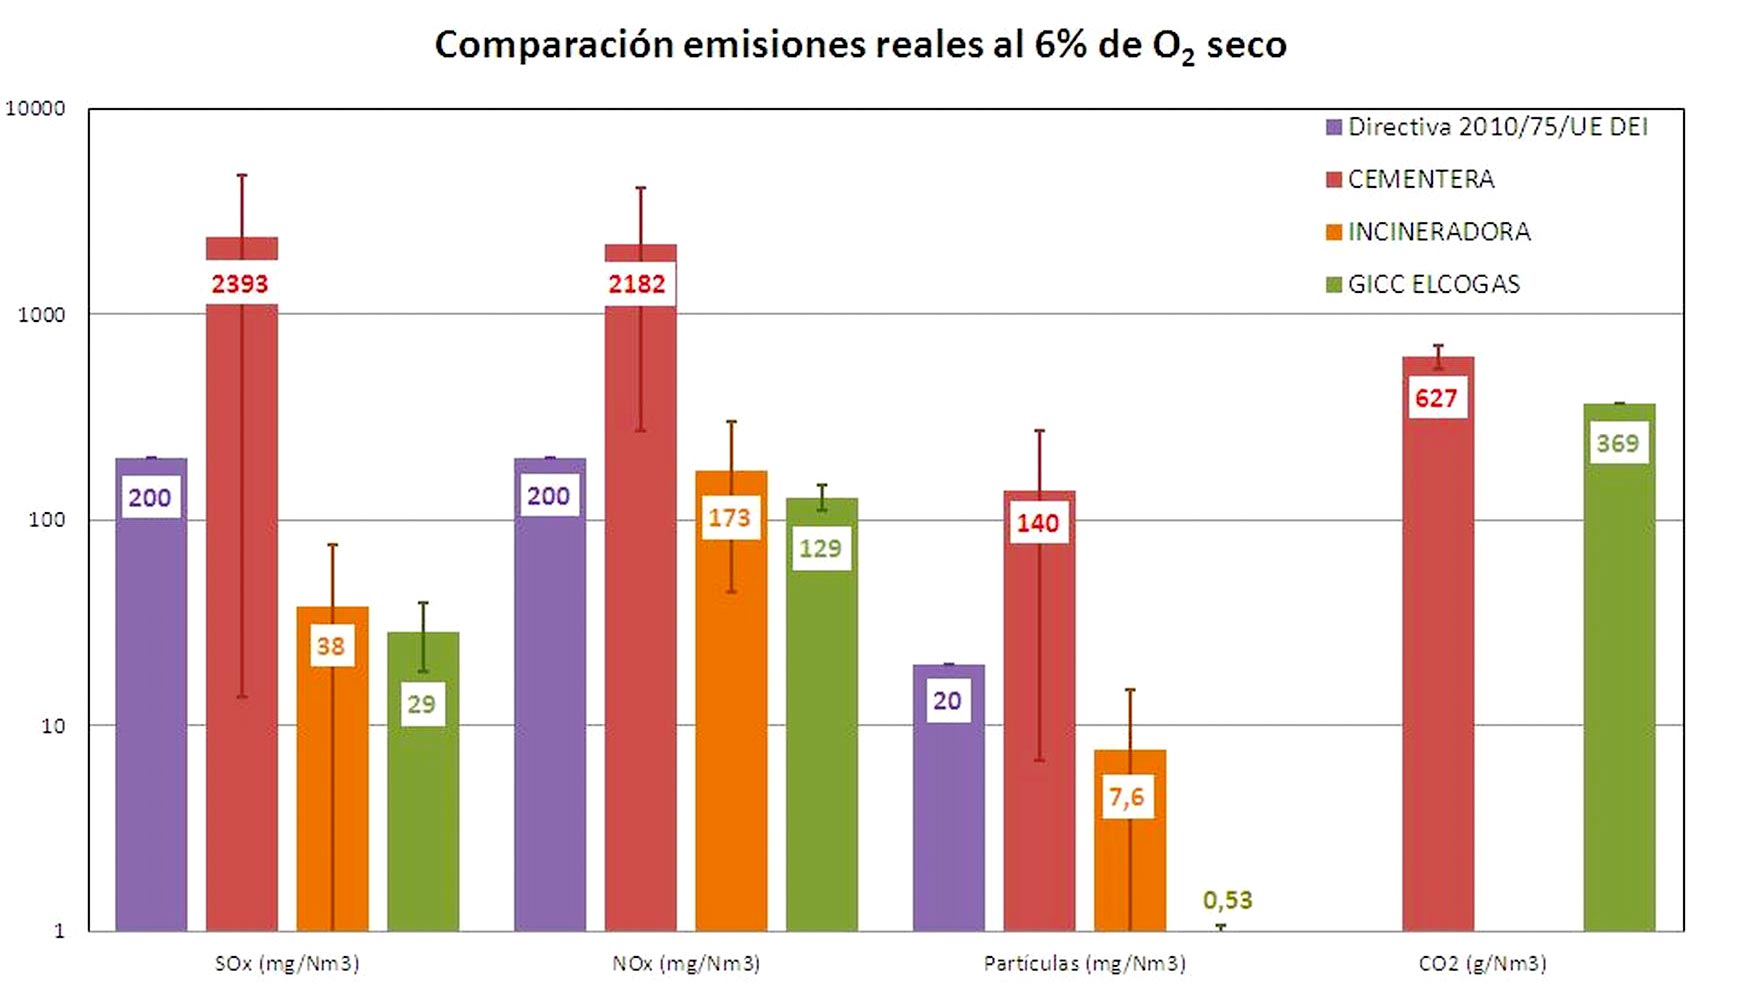 Figura 3. Comparacin de emisiones de cementeras, incineradoras, Elcogas y la DEI